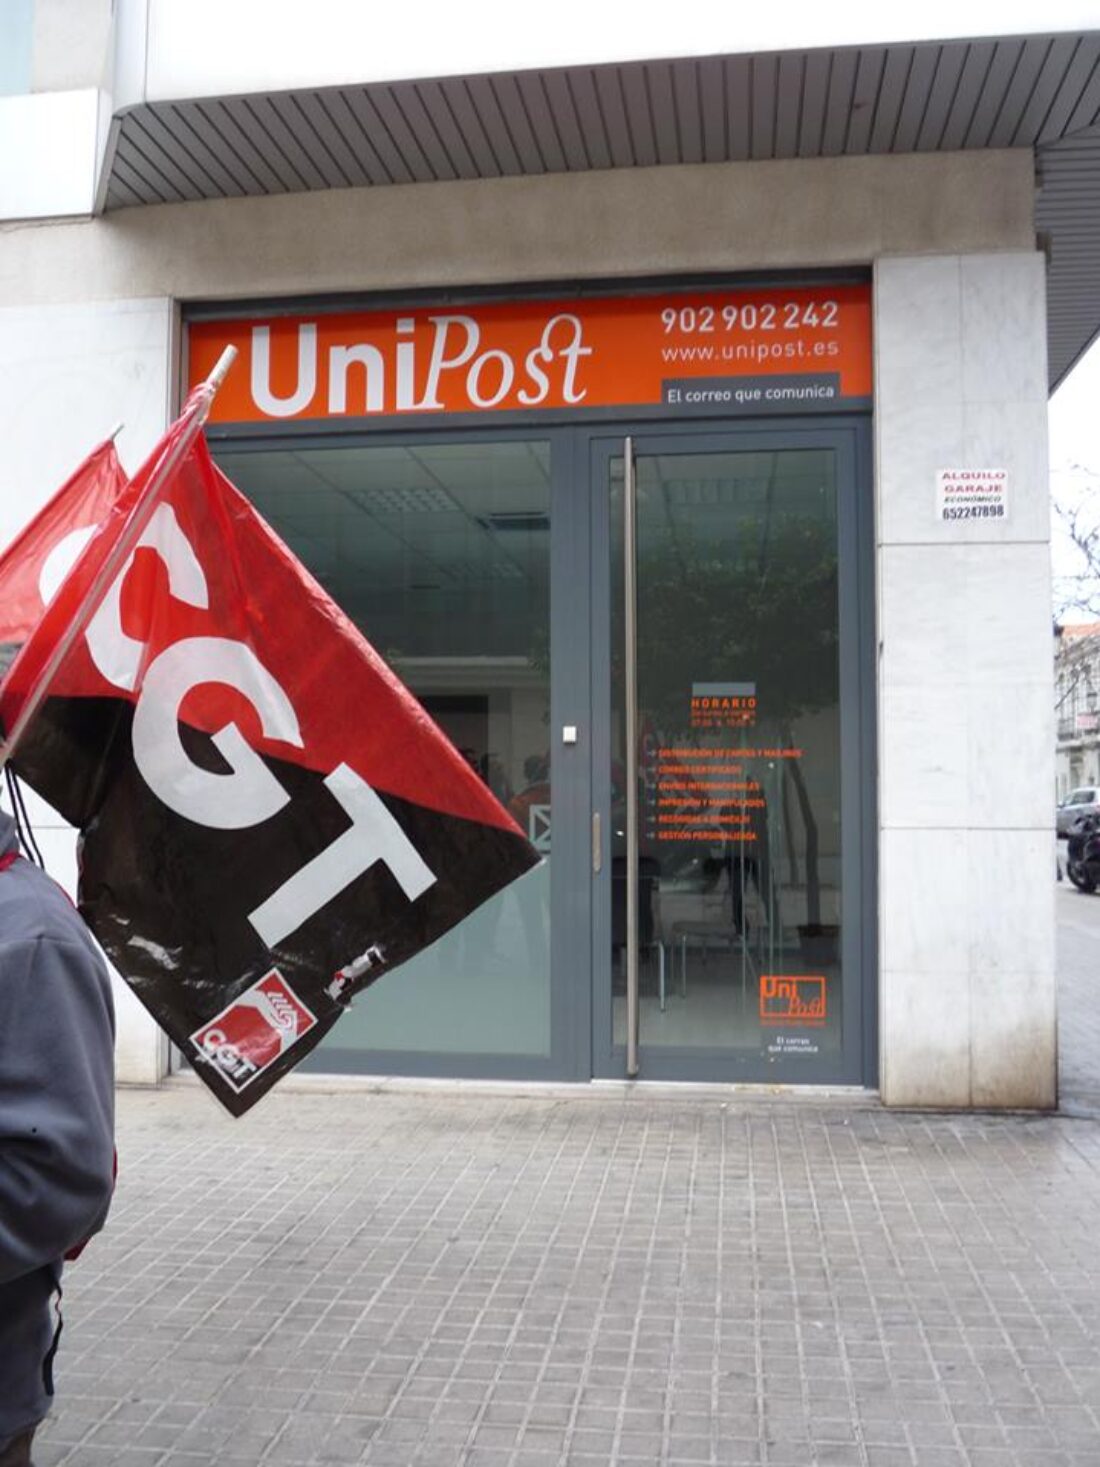 16-D: Manifestación de Unipost en Santiago de Compostela